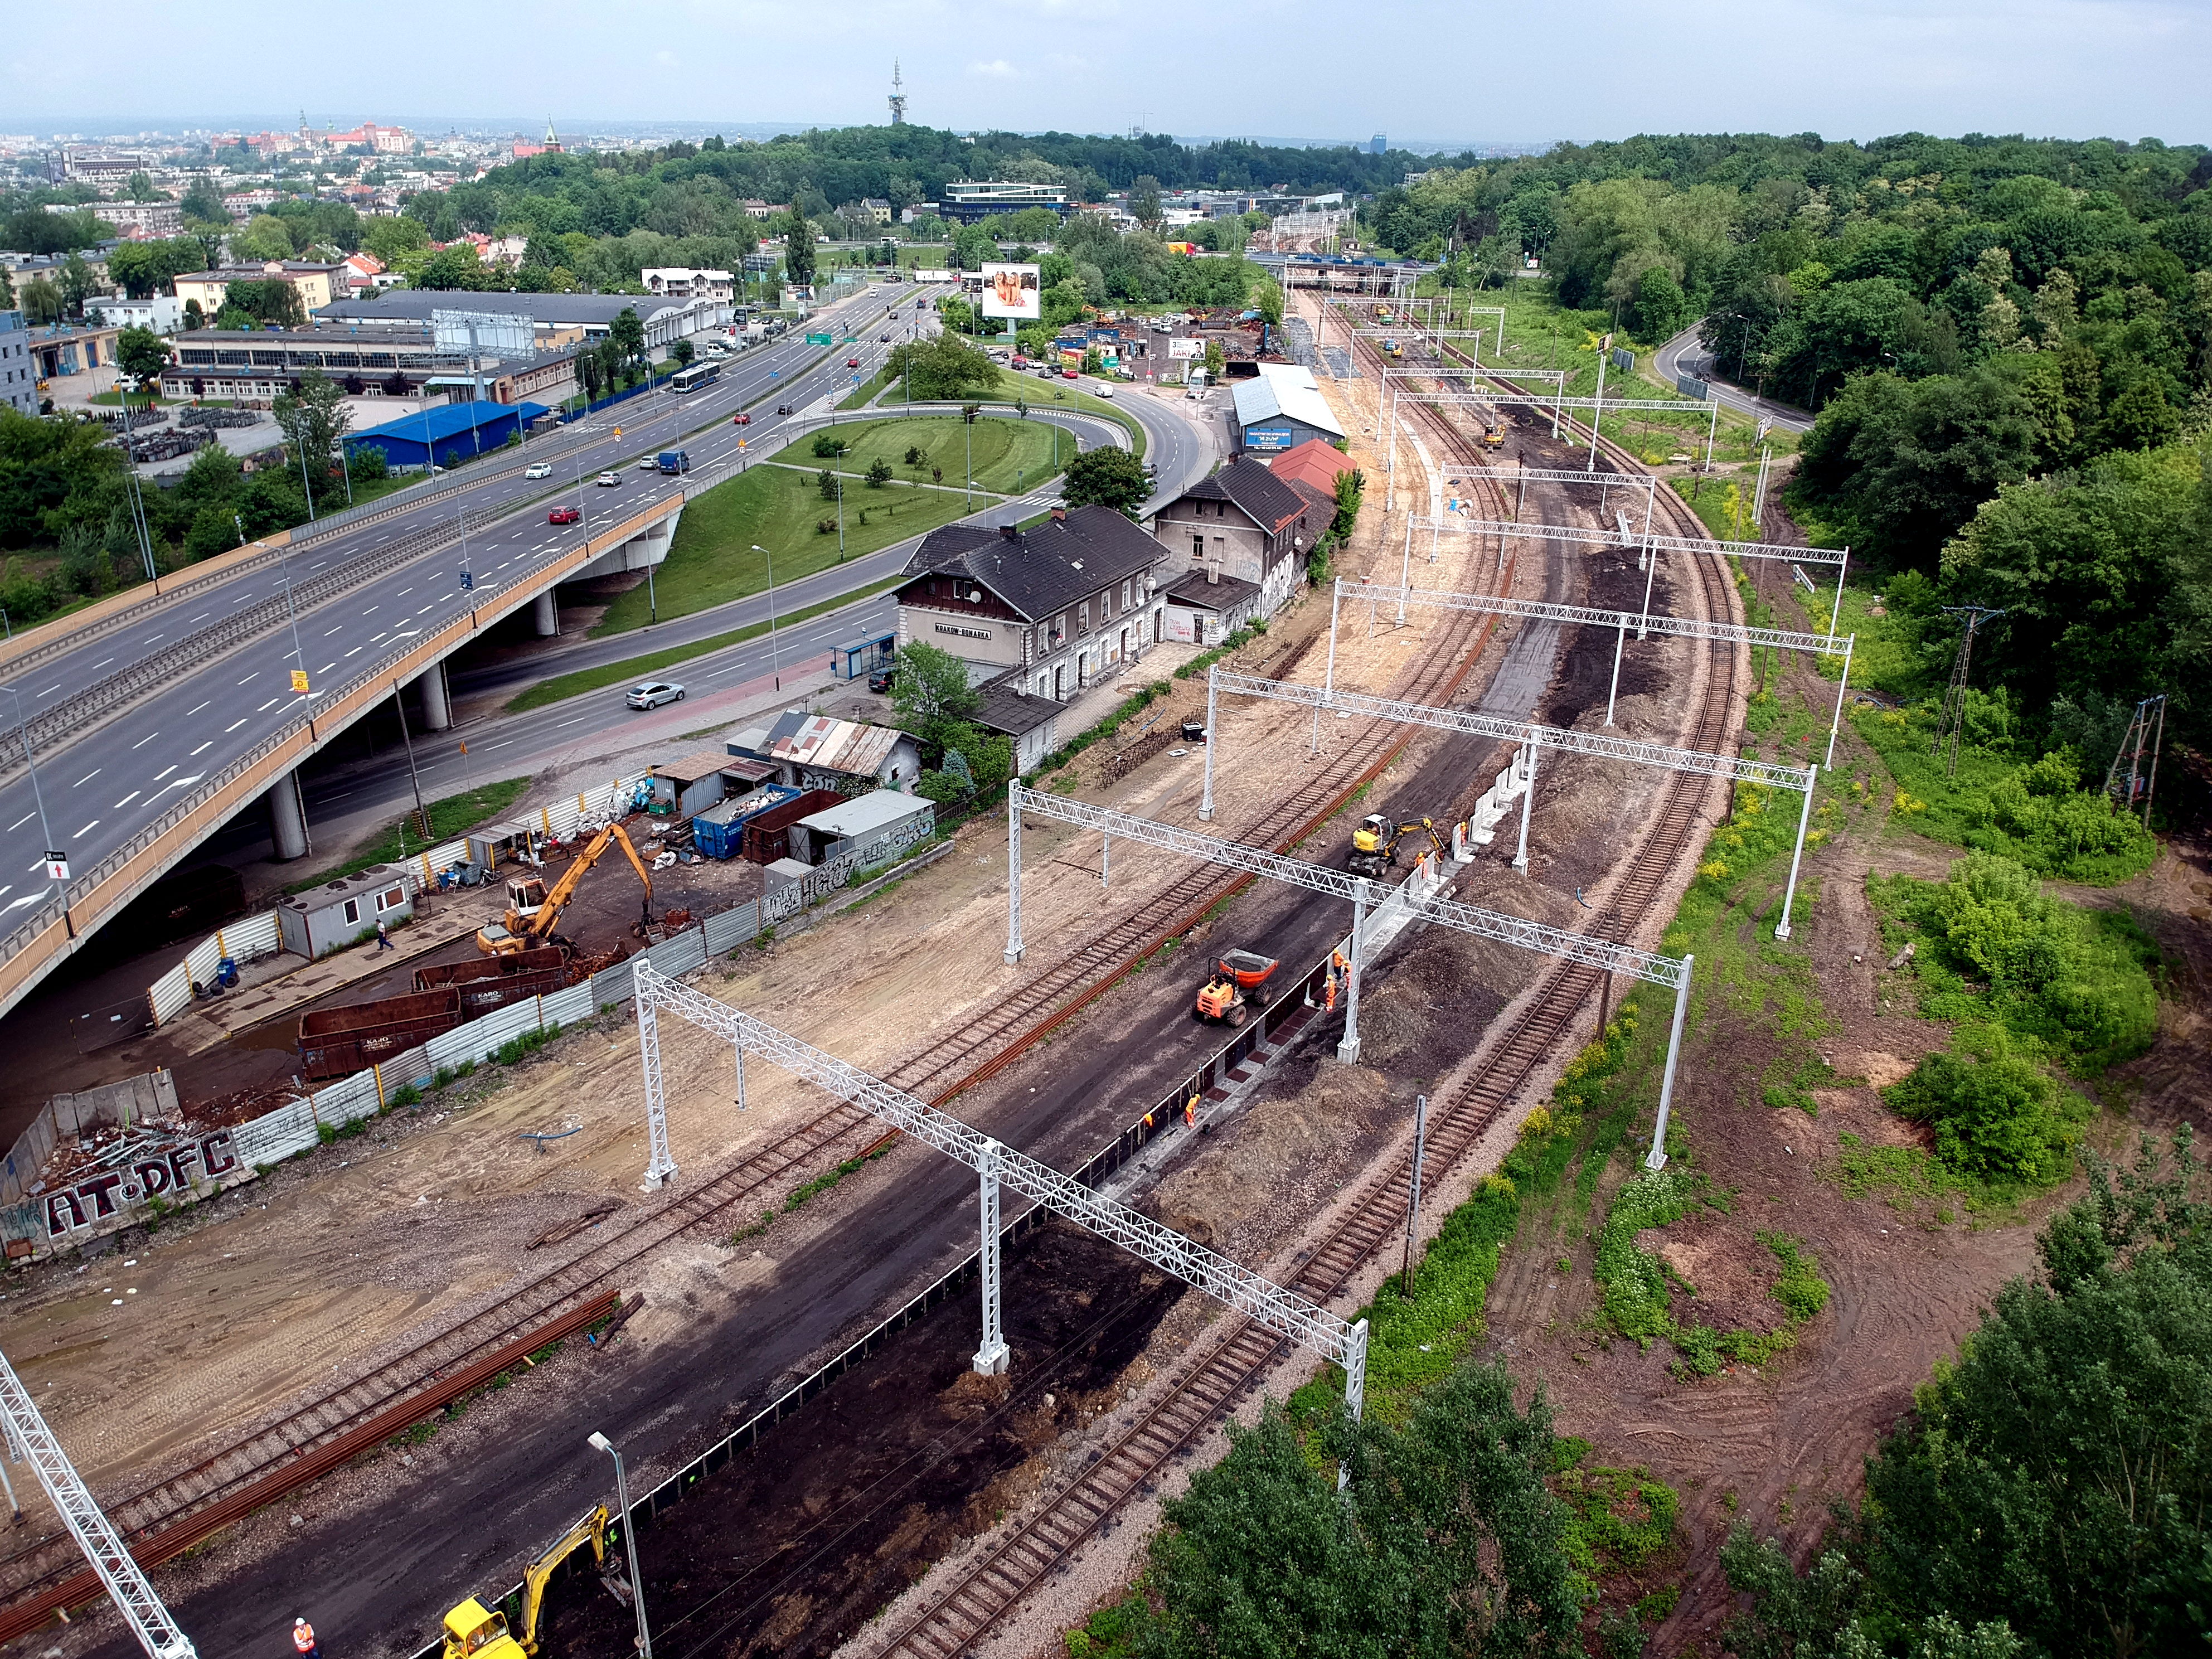 Prace budowlane na torze kolejowym, Kraków  - Jernbanearbejde